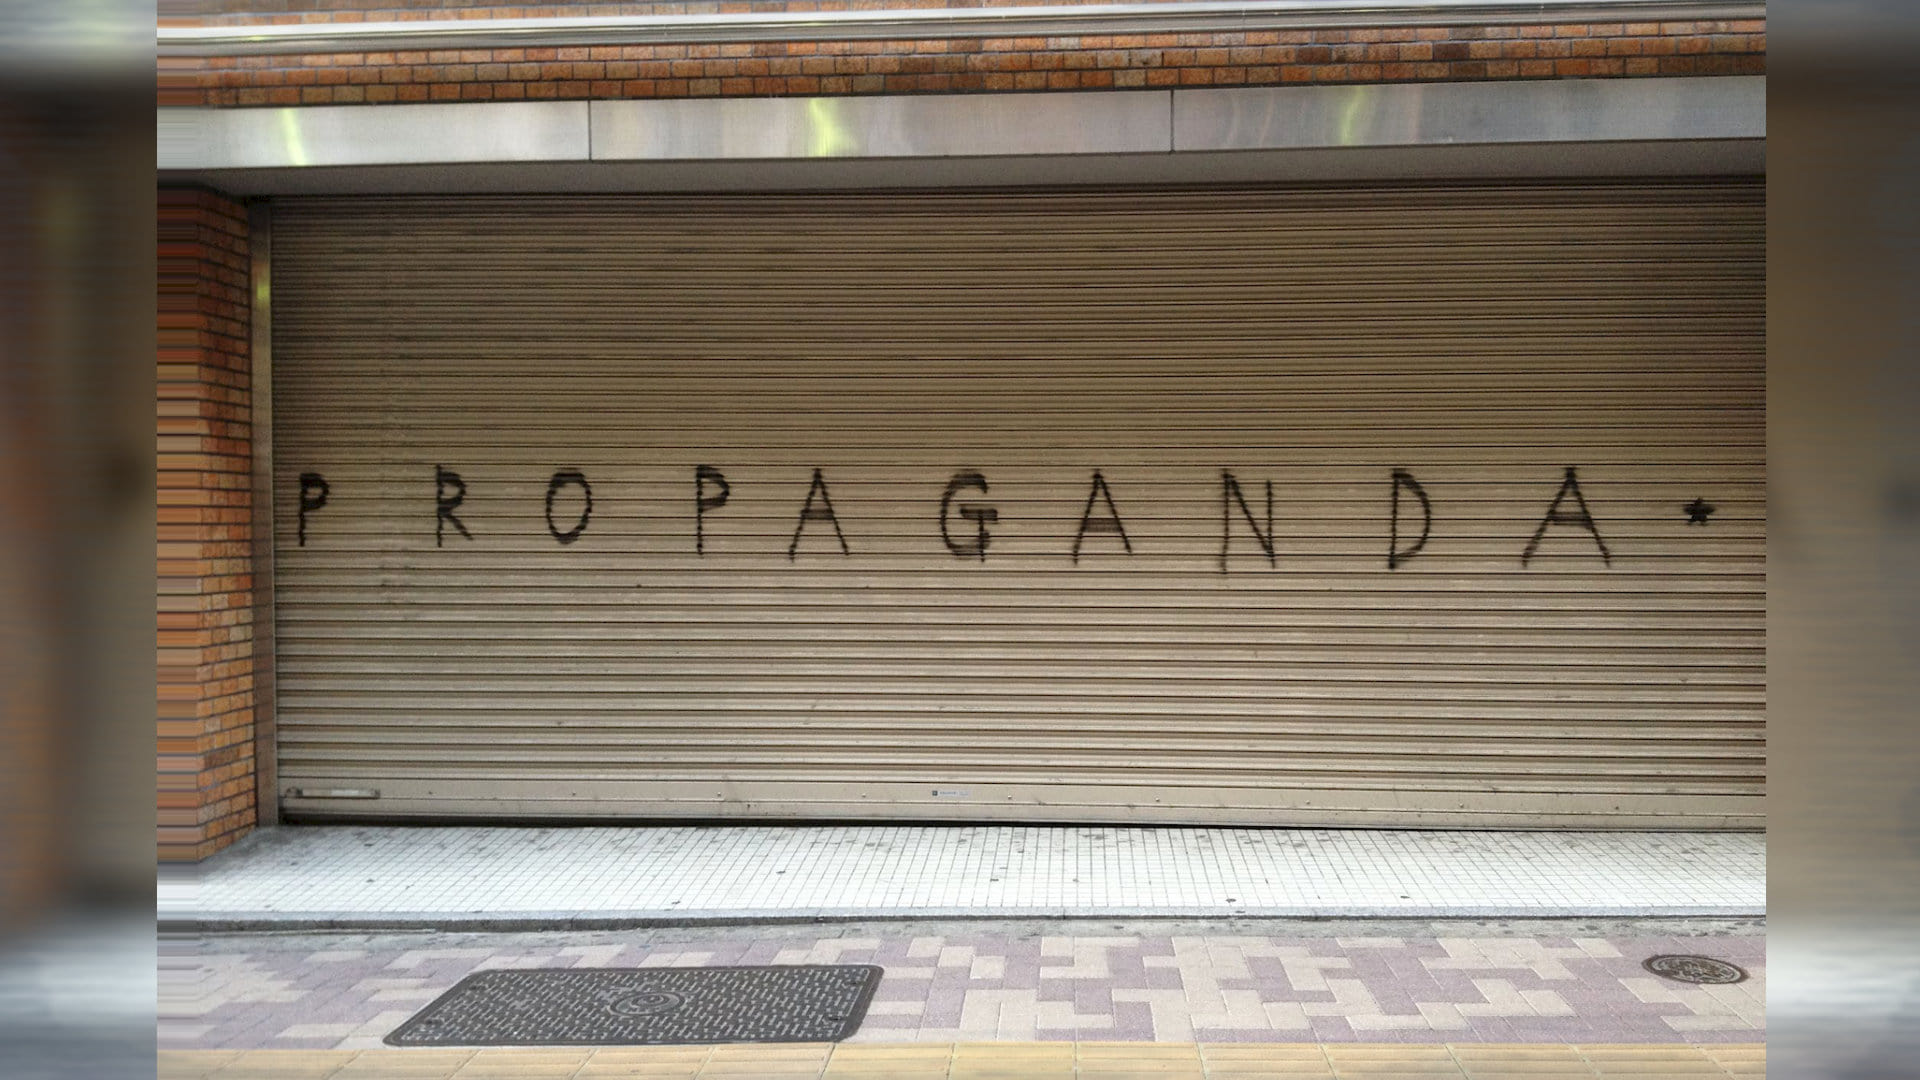 Propaganda (2013)